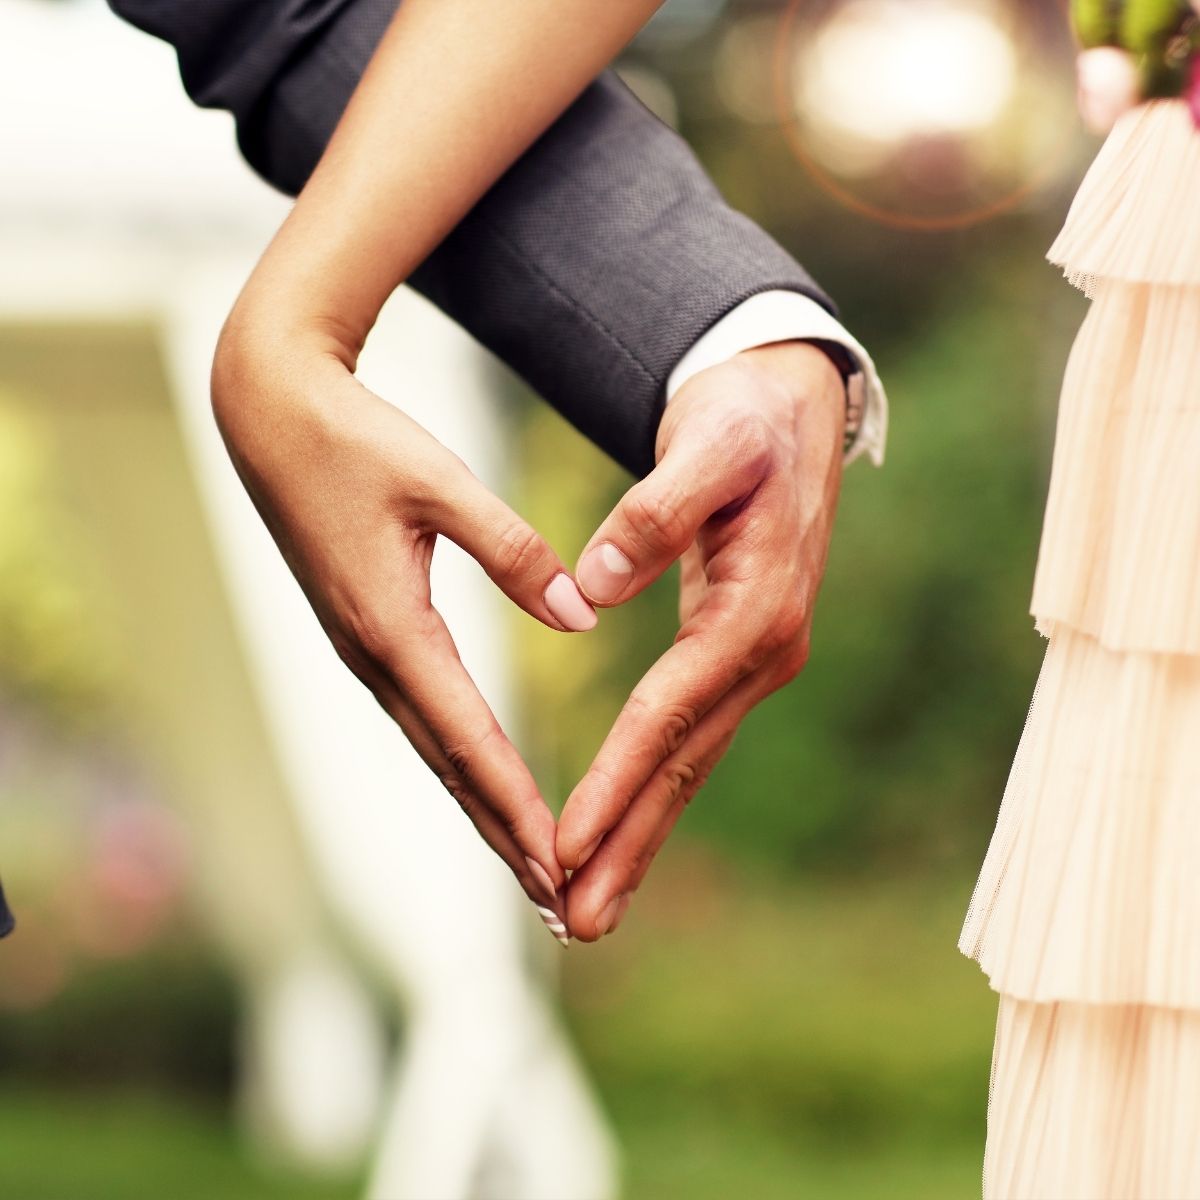 requisitos para casarse por el civil cdmx costos 2021 documentos